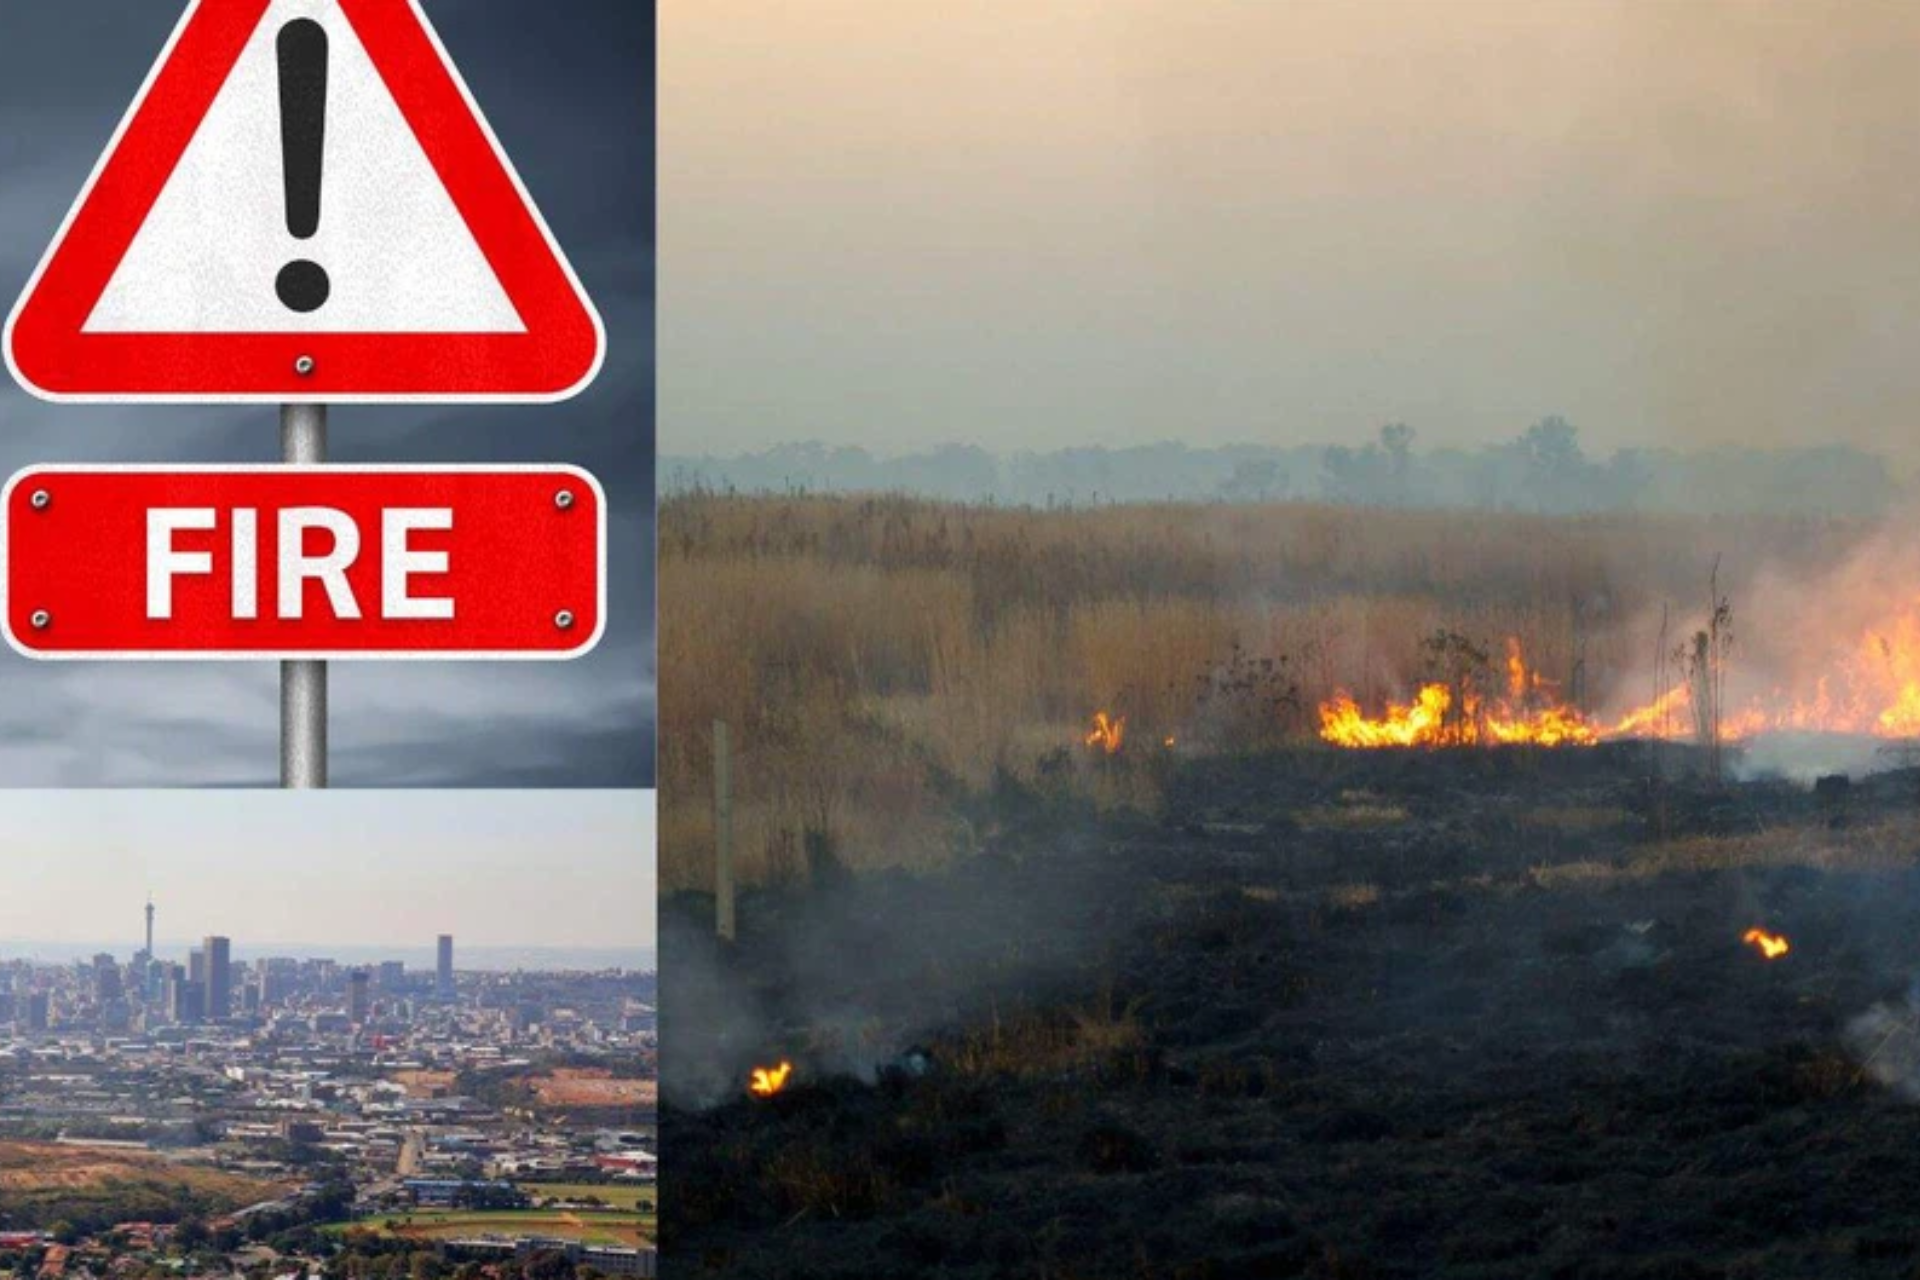 Gauteng veld fires